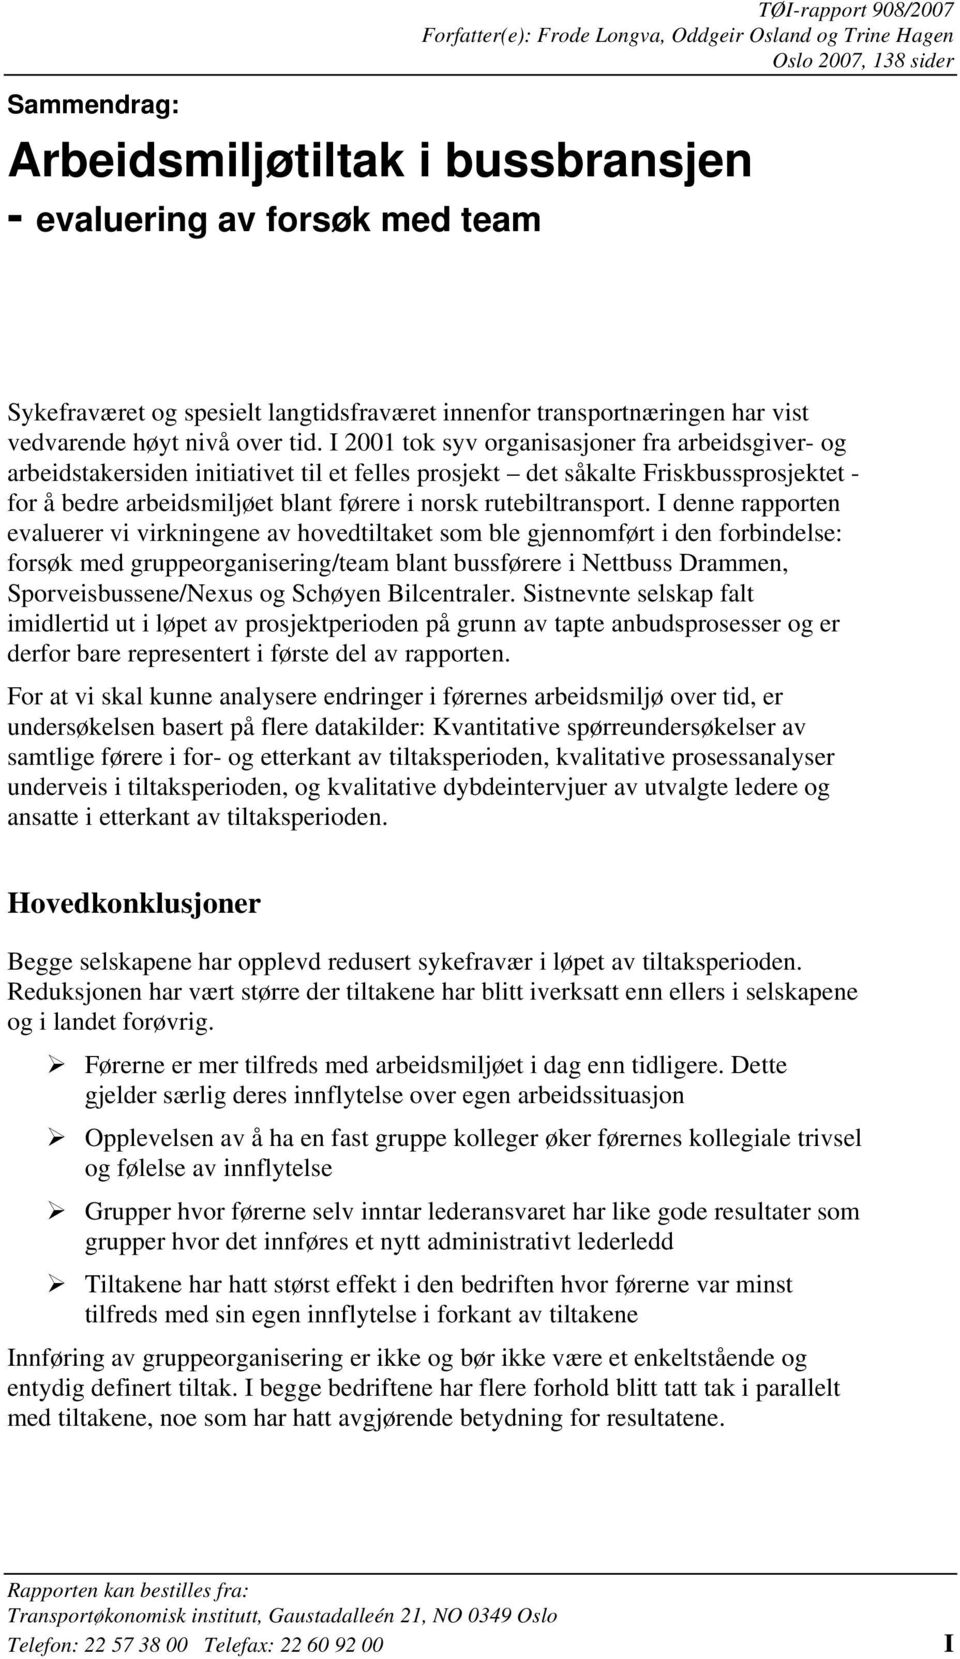 I 2001 tok syv organisasjoner fra arbeidsgiver- og arbeidstakersiden initiativet til et felles prosjekt det såkalte Friskbussprosjektet - for å bedre arbeidsmiljøet blant førere i norsk